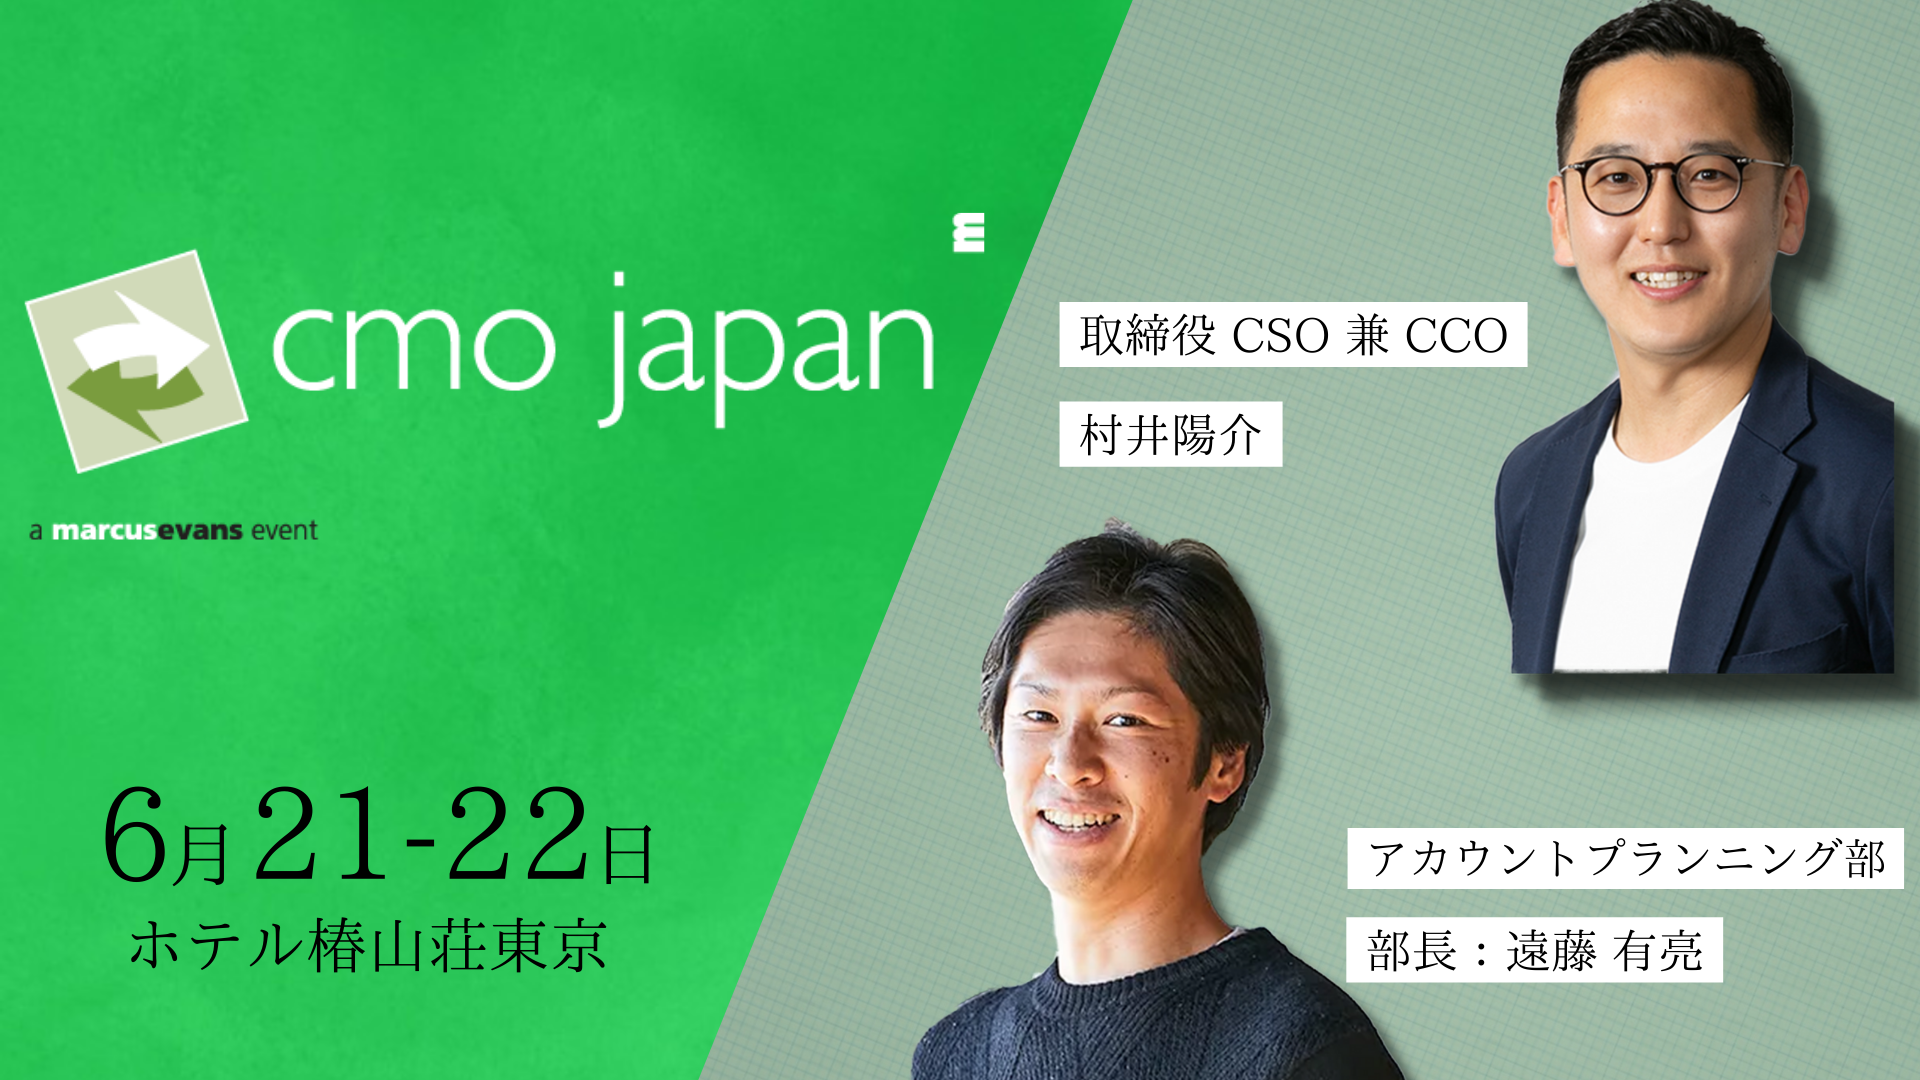 テレシー 日本を代表するマーケターが集合する Cmo Japan Summit22 に参加 株式会社テレシーのプレスリリース